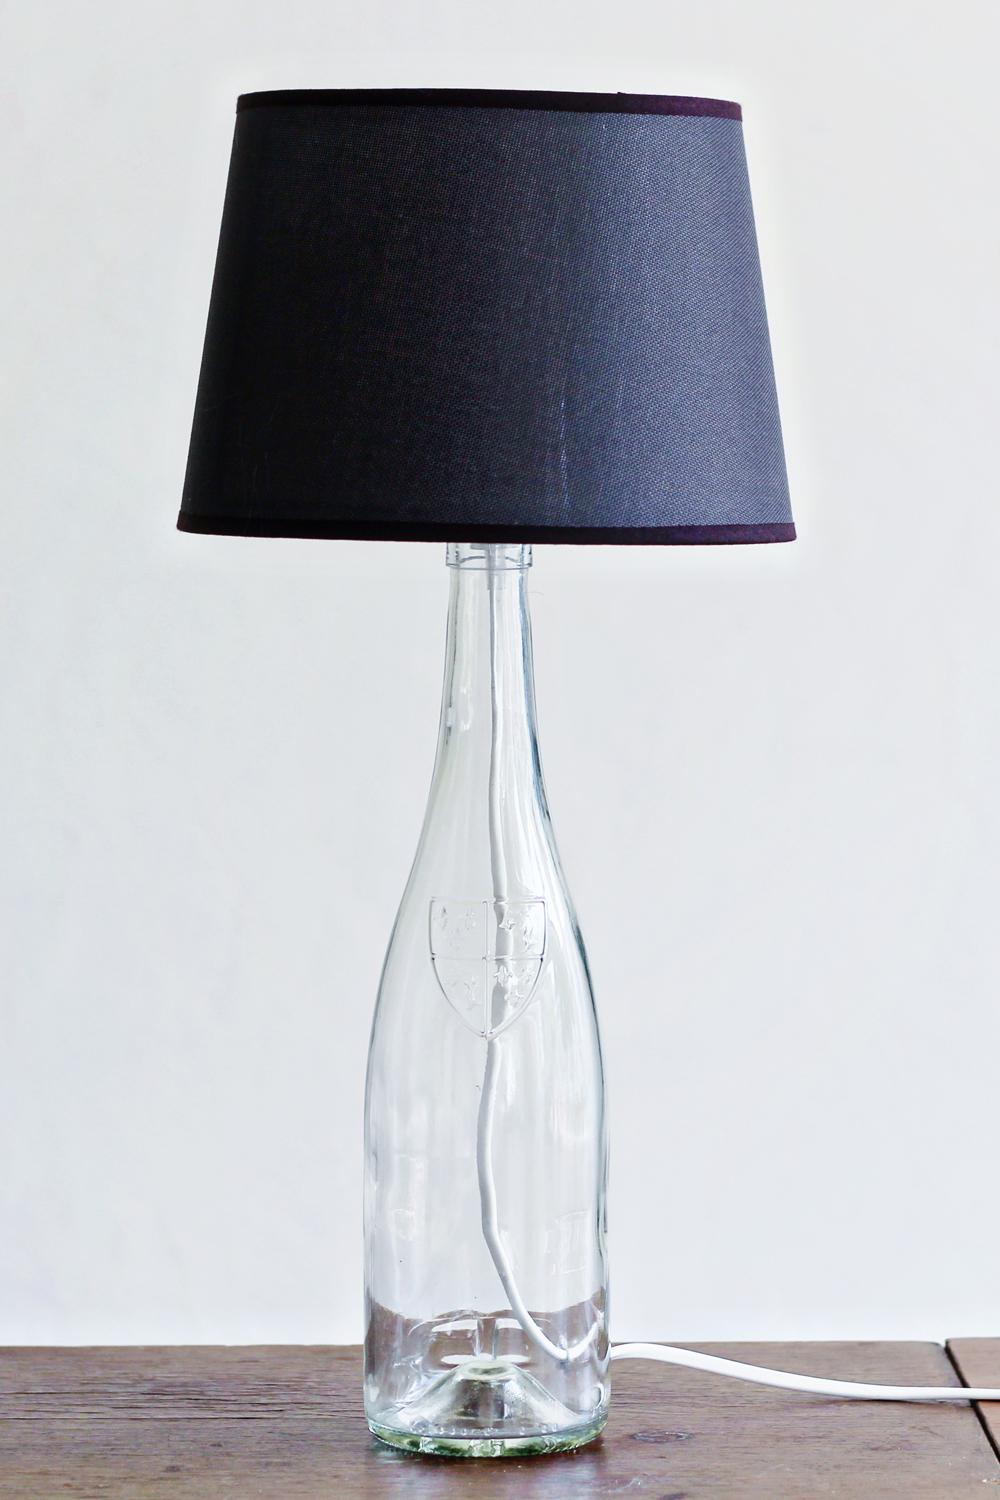 DIY bottle lamp